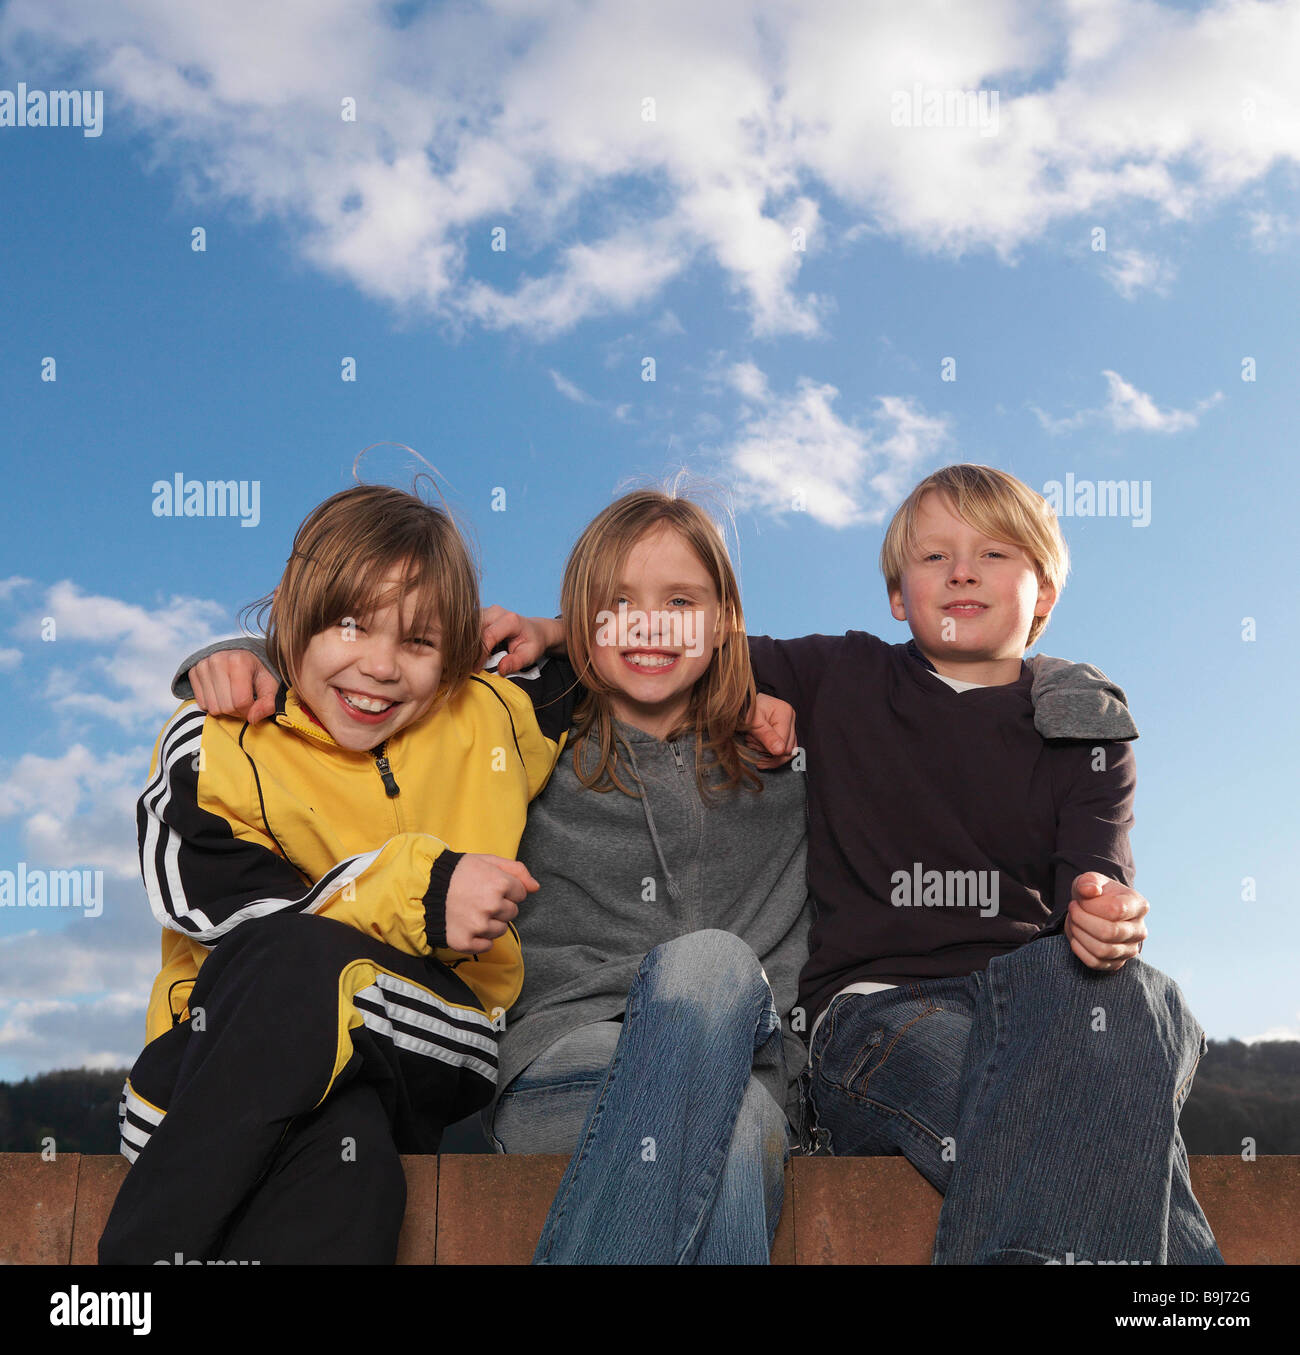 3 enfants assis sur un mur bas, smiling Banque D'Images